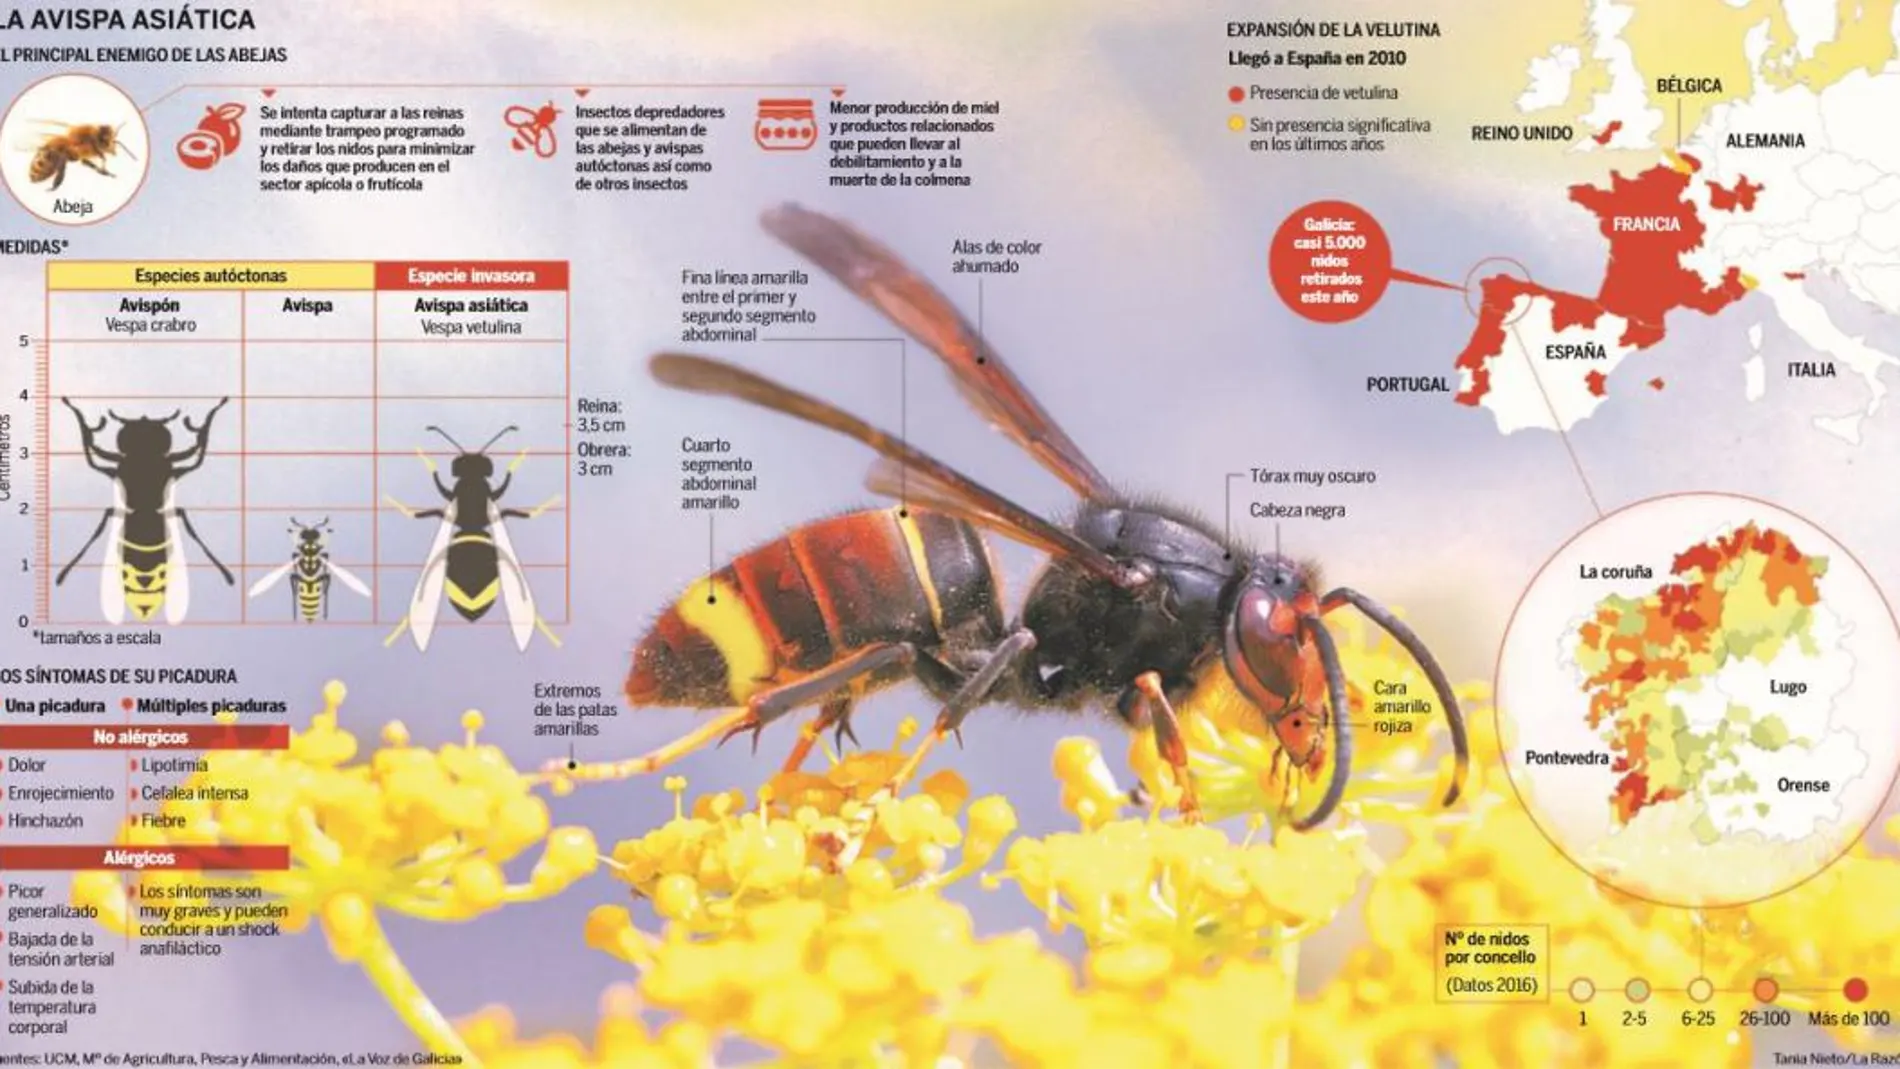 La avispa asiática: El principal enemigo de las abejas